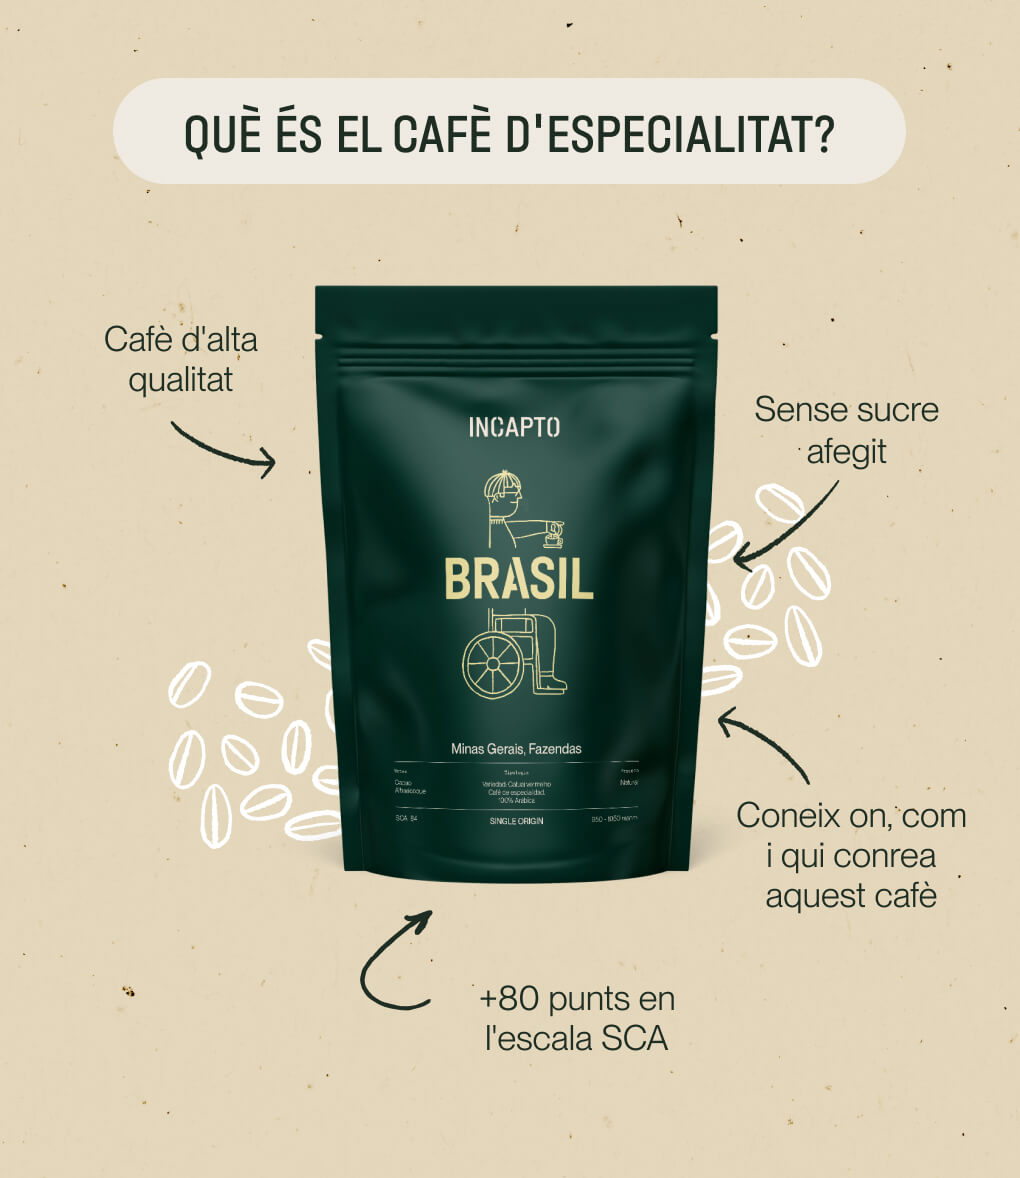 Característiques del cafè d'especialitat d'origen Brasil